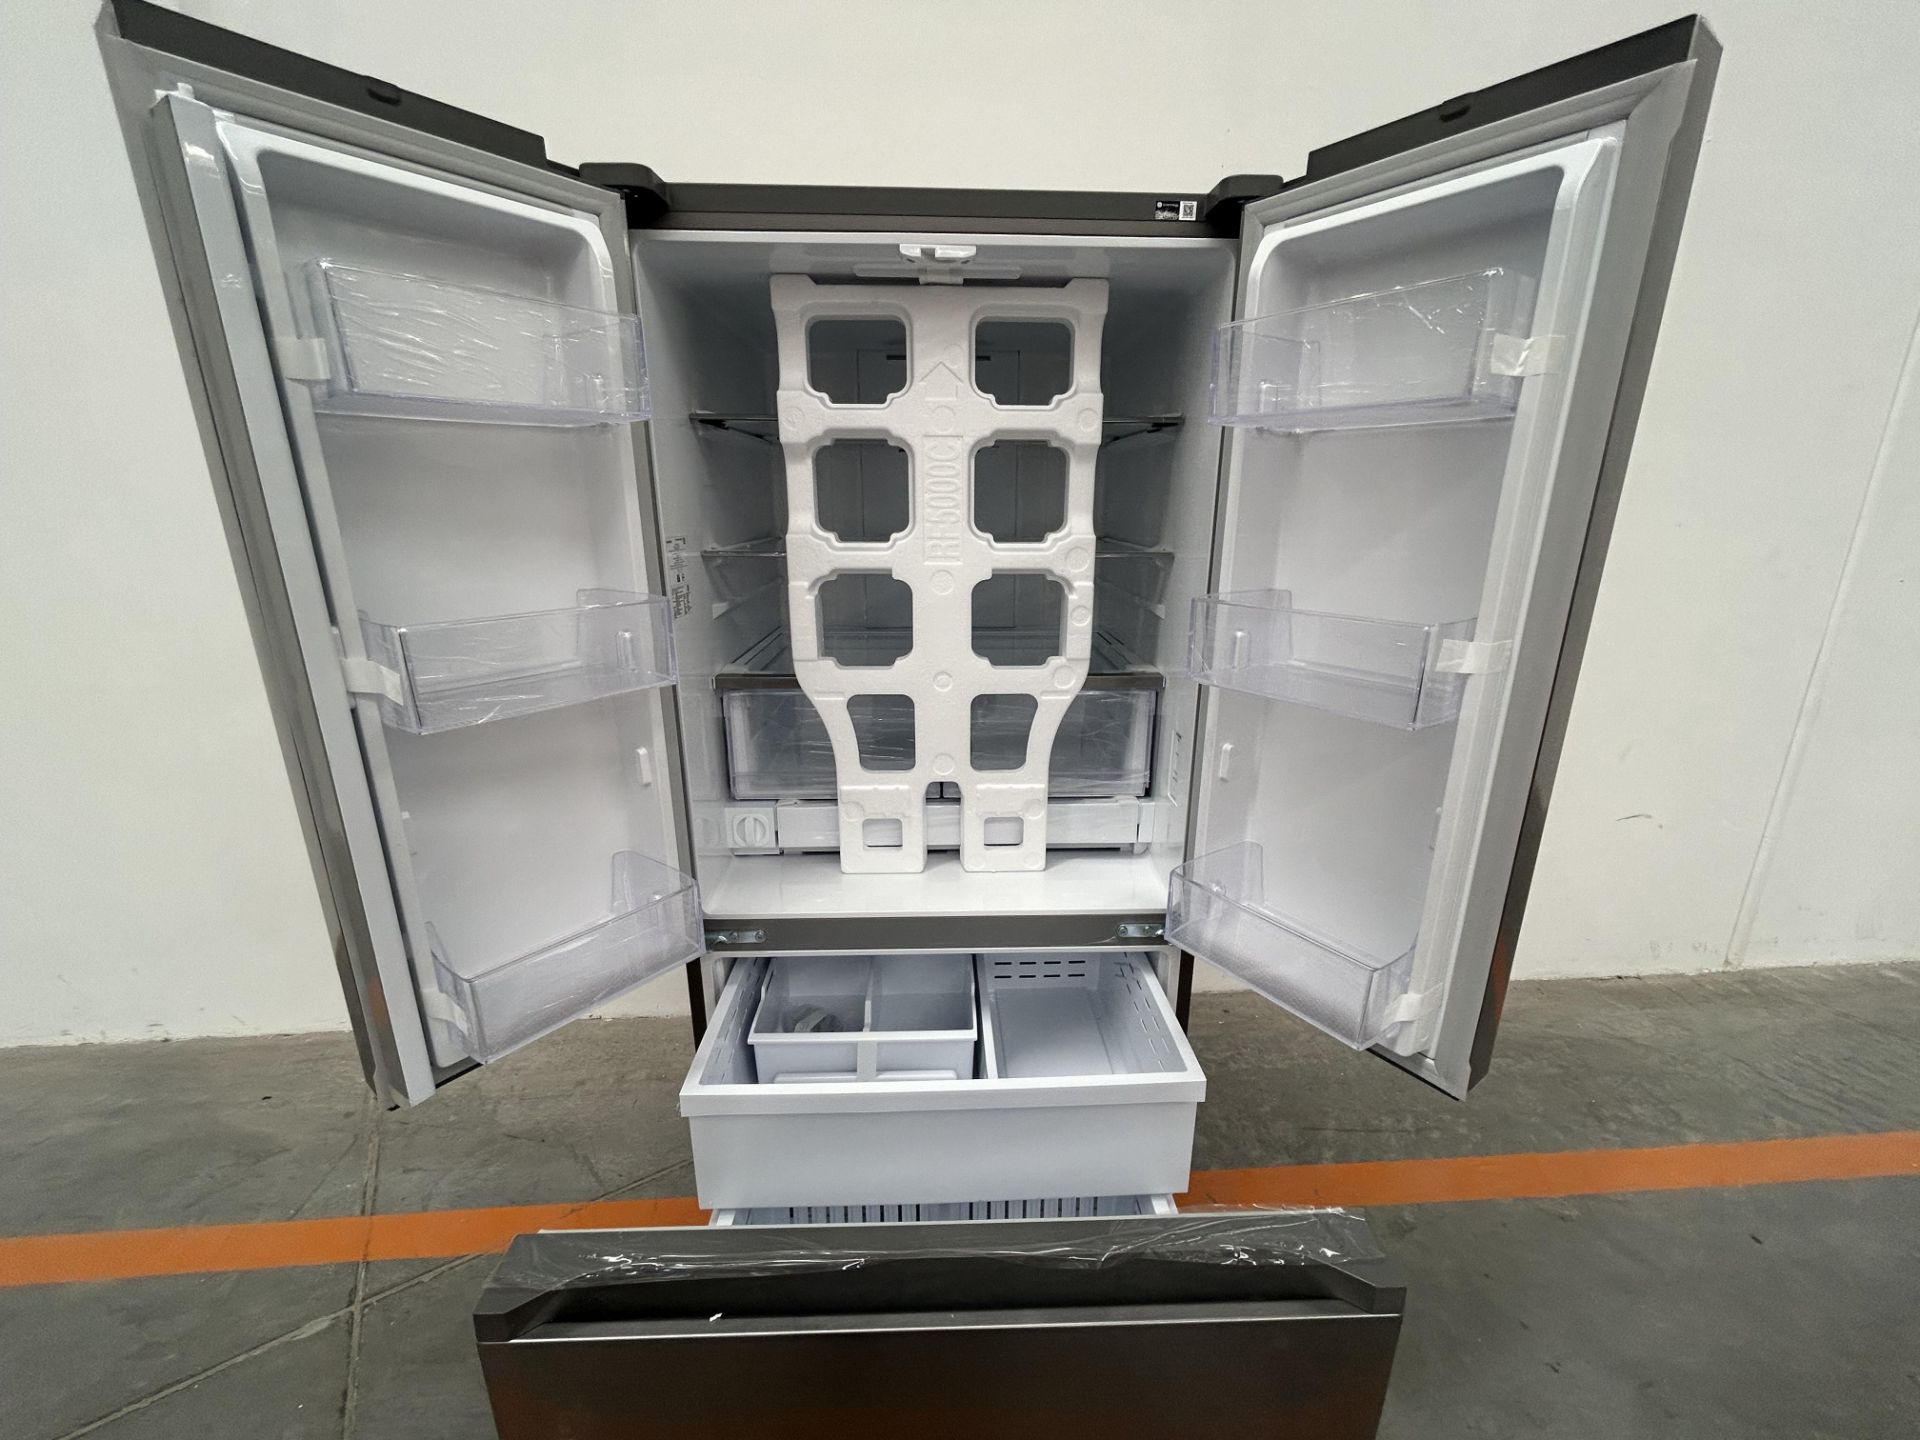 (NUEVO) Refrigerador Marca SAMSUNG, Modelo RF25C5151S9, Serie 00359T, Color GRIS - Image 4 of 4